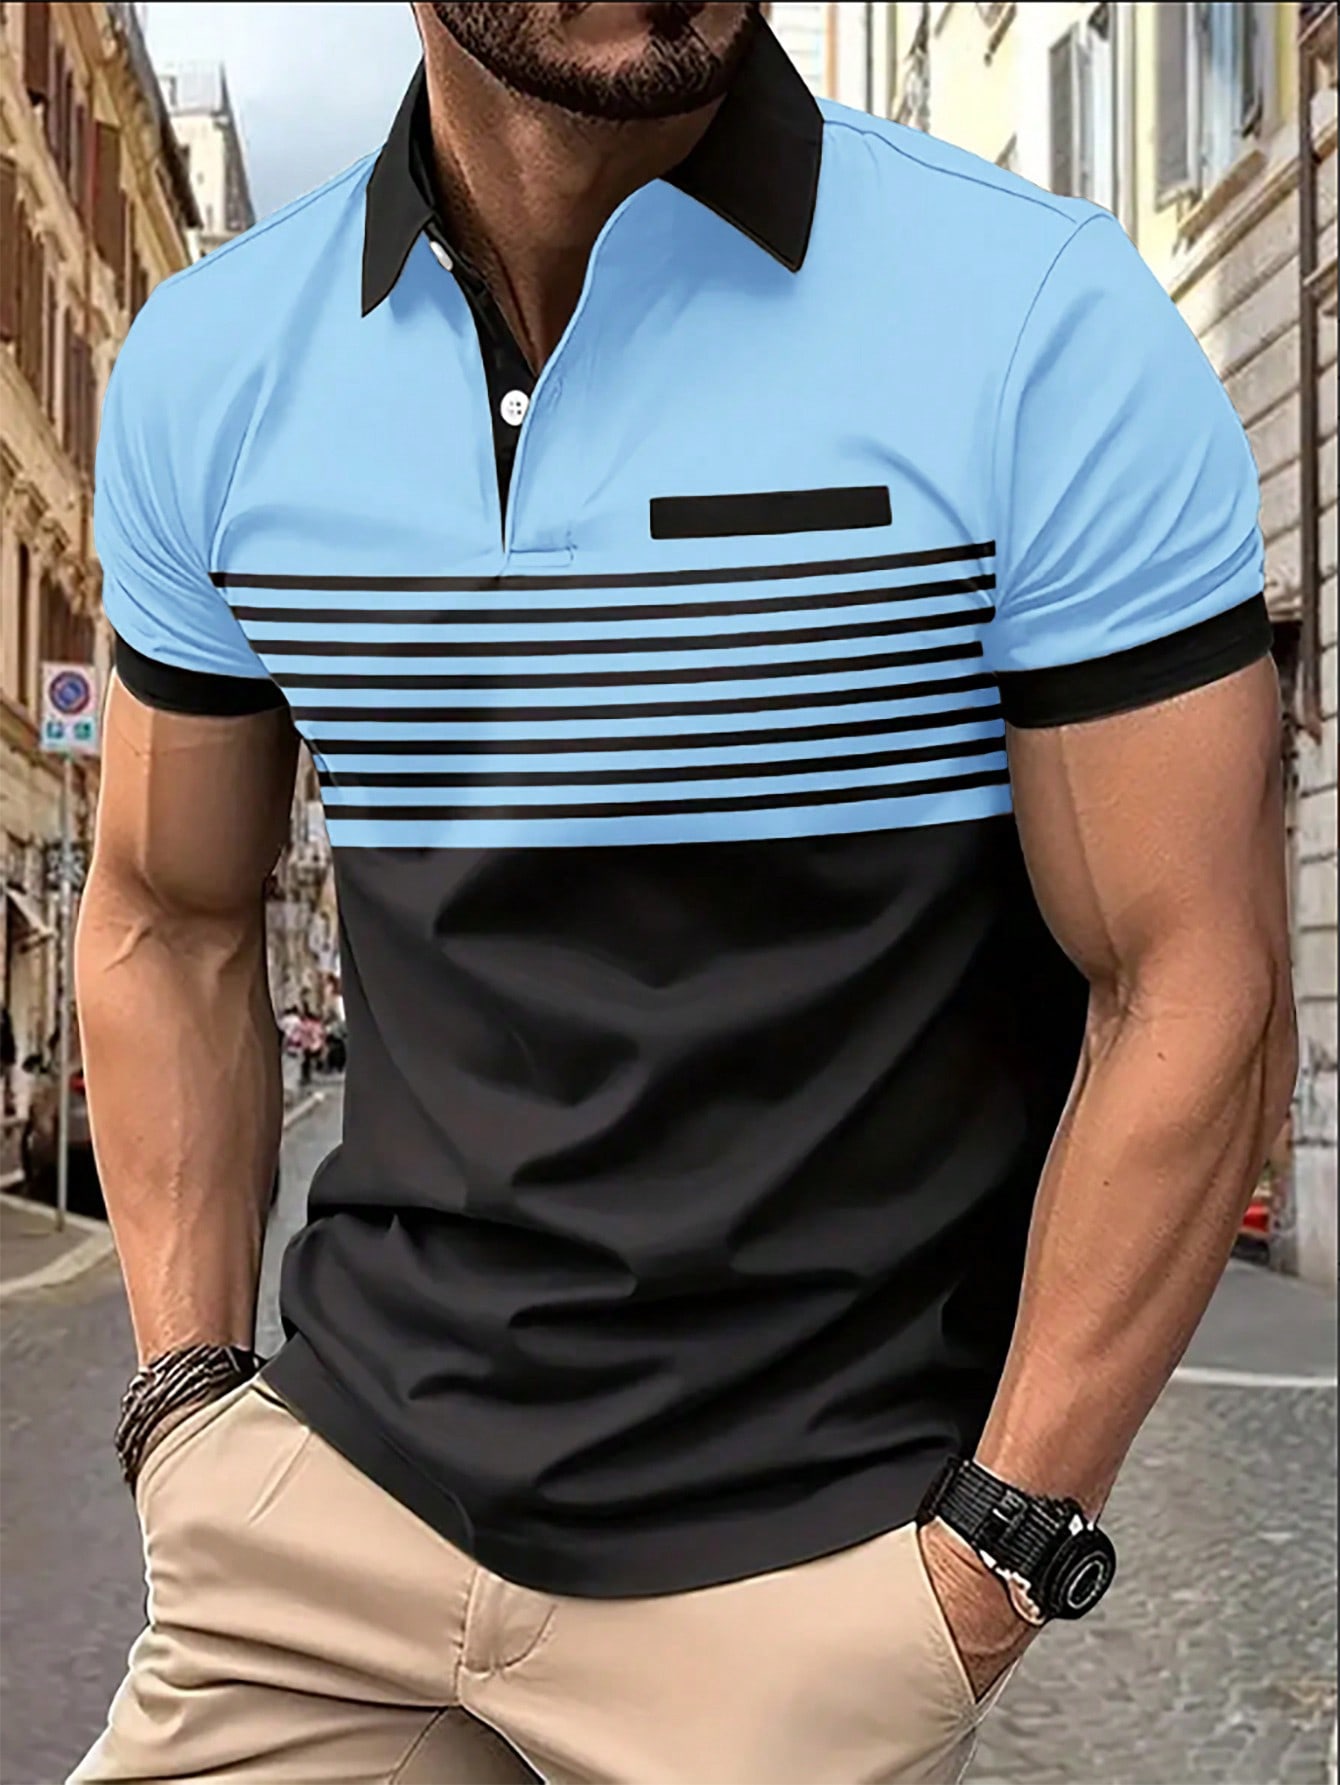 Мужская рубашка-поло контрастного цвета Manfinity Homme, голубые